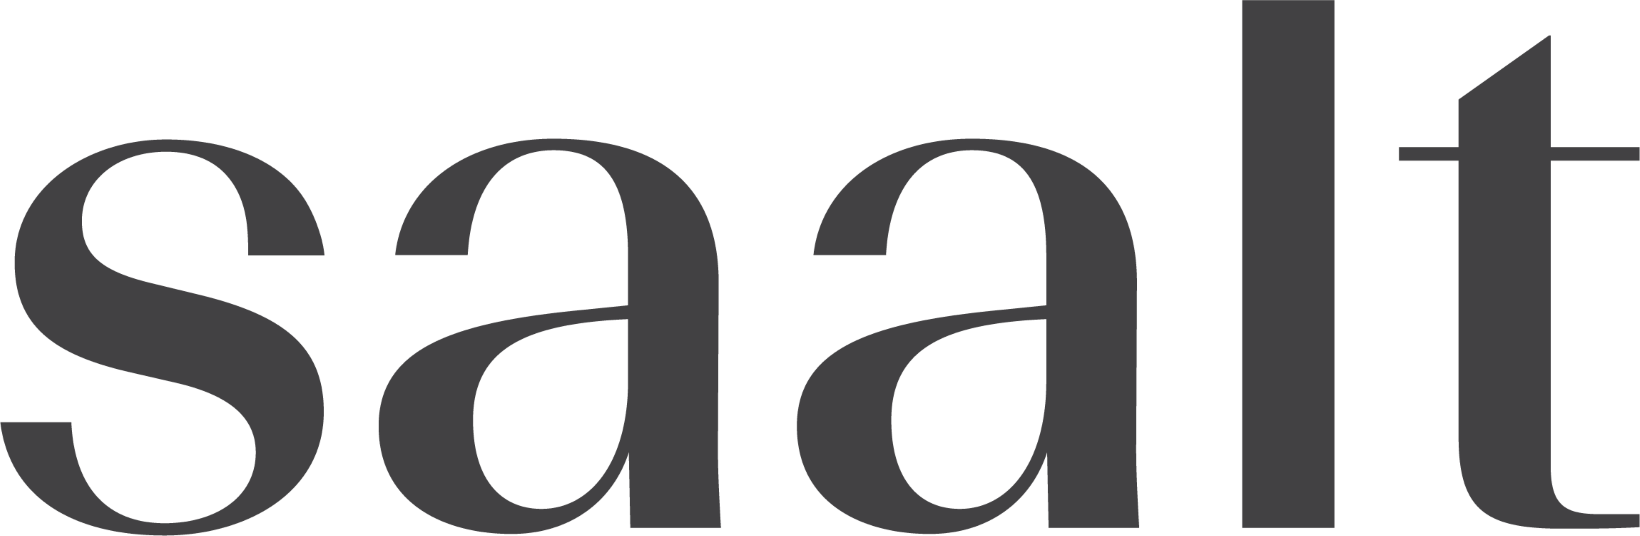 Saalt UK logo